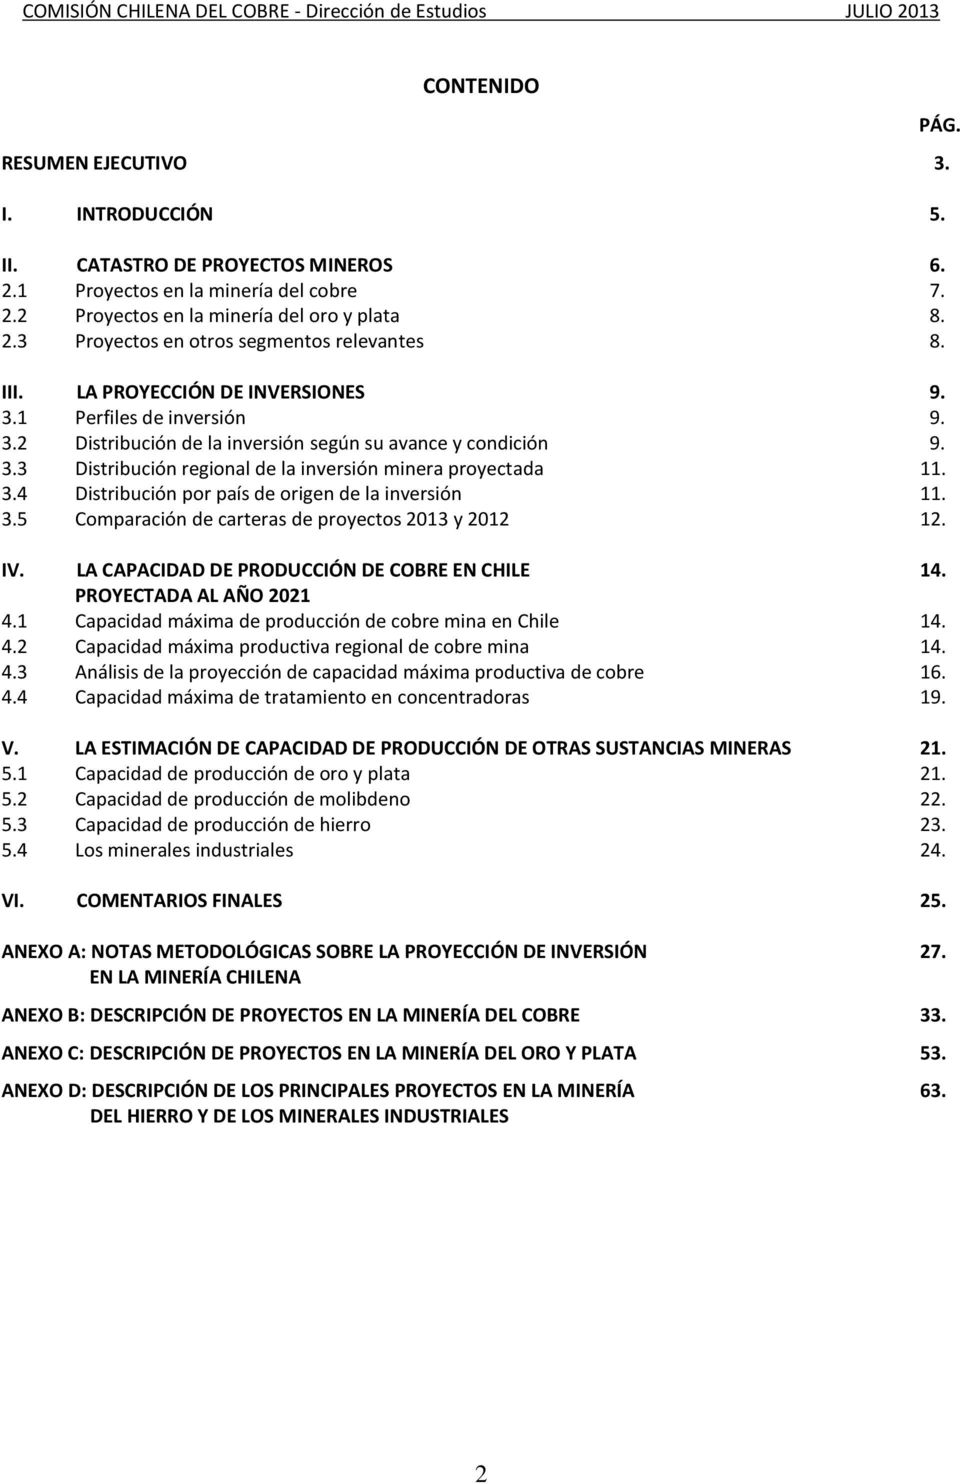 3.5 Comparación de carteras de proyectos 2013 y 2012 12. IV. LA CAPACIDAD DE PRODUCCIÓN DE COBRE EN CHILE 14. PROYECTADA AL AÑO 2021 4.1 Capacidad máxima de producción de cobre mina en Chile 14. 4.2 Capacidad máxima productiva regional de cobre mina 14.